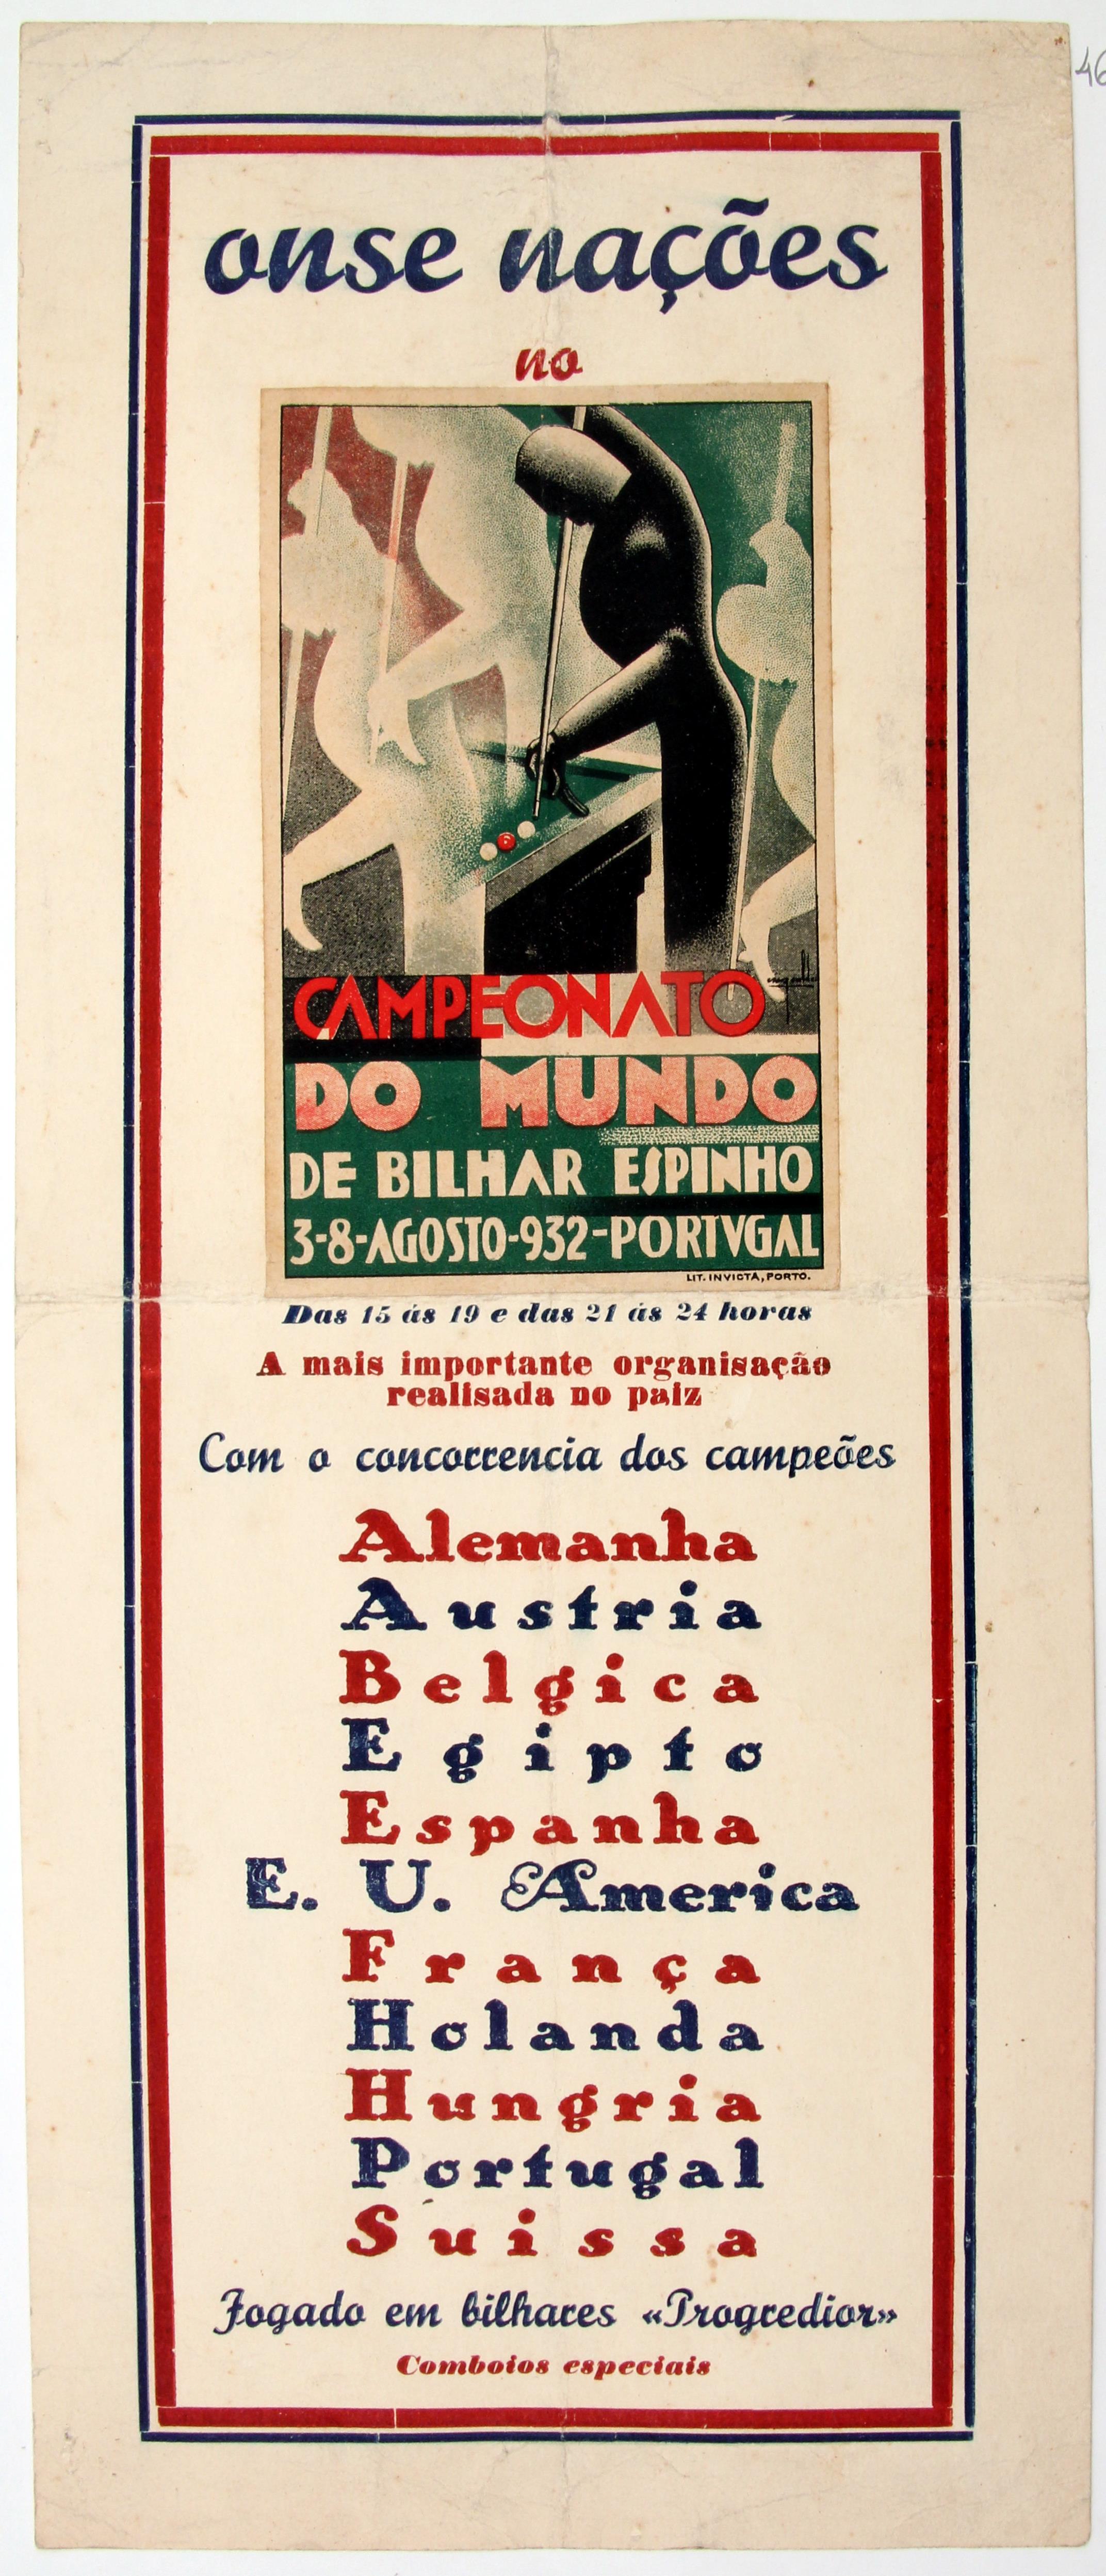 Cruz Caldas (2) : 1928-1946 : onze nações no campeonato do mundo de bilhar : Espinho